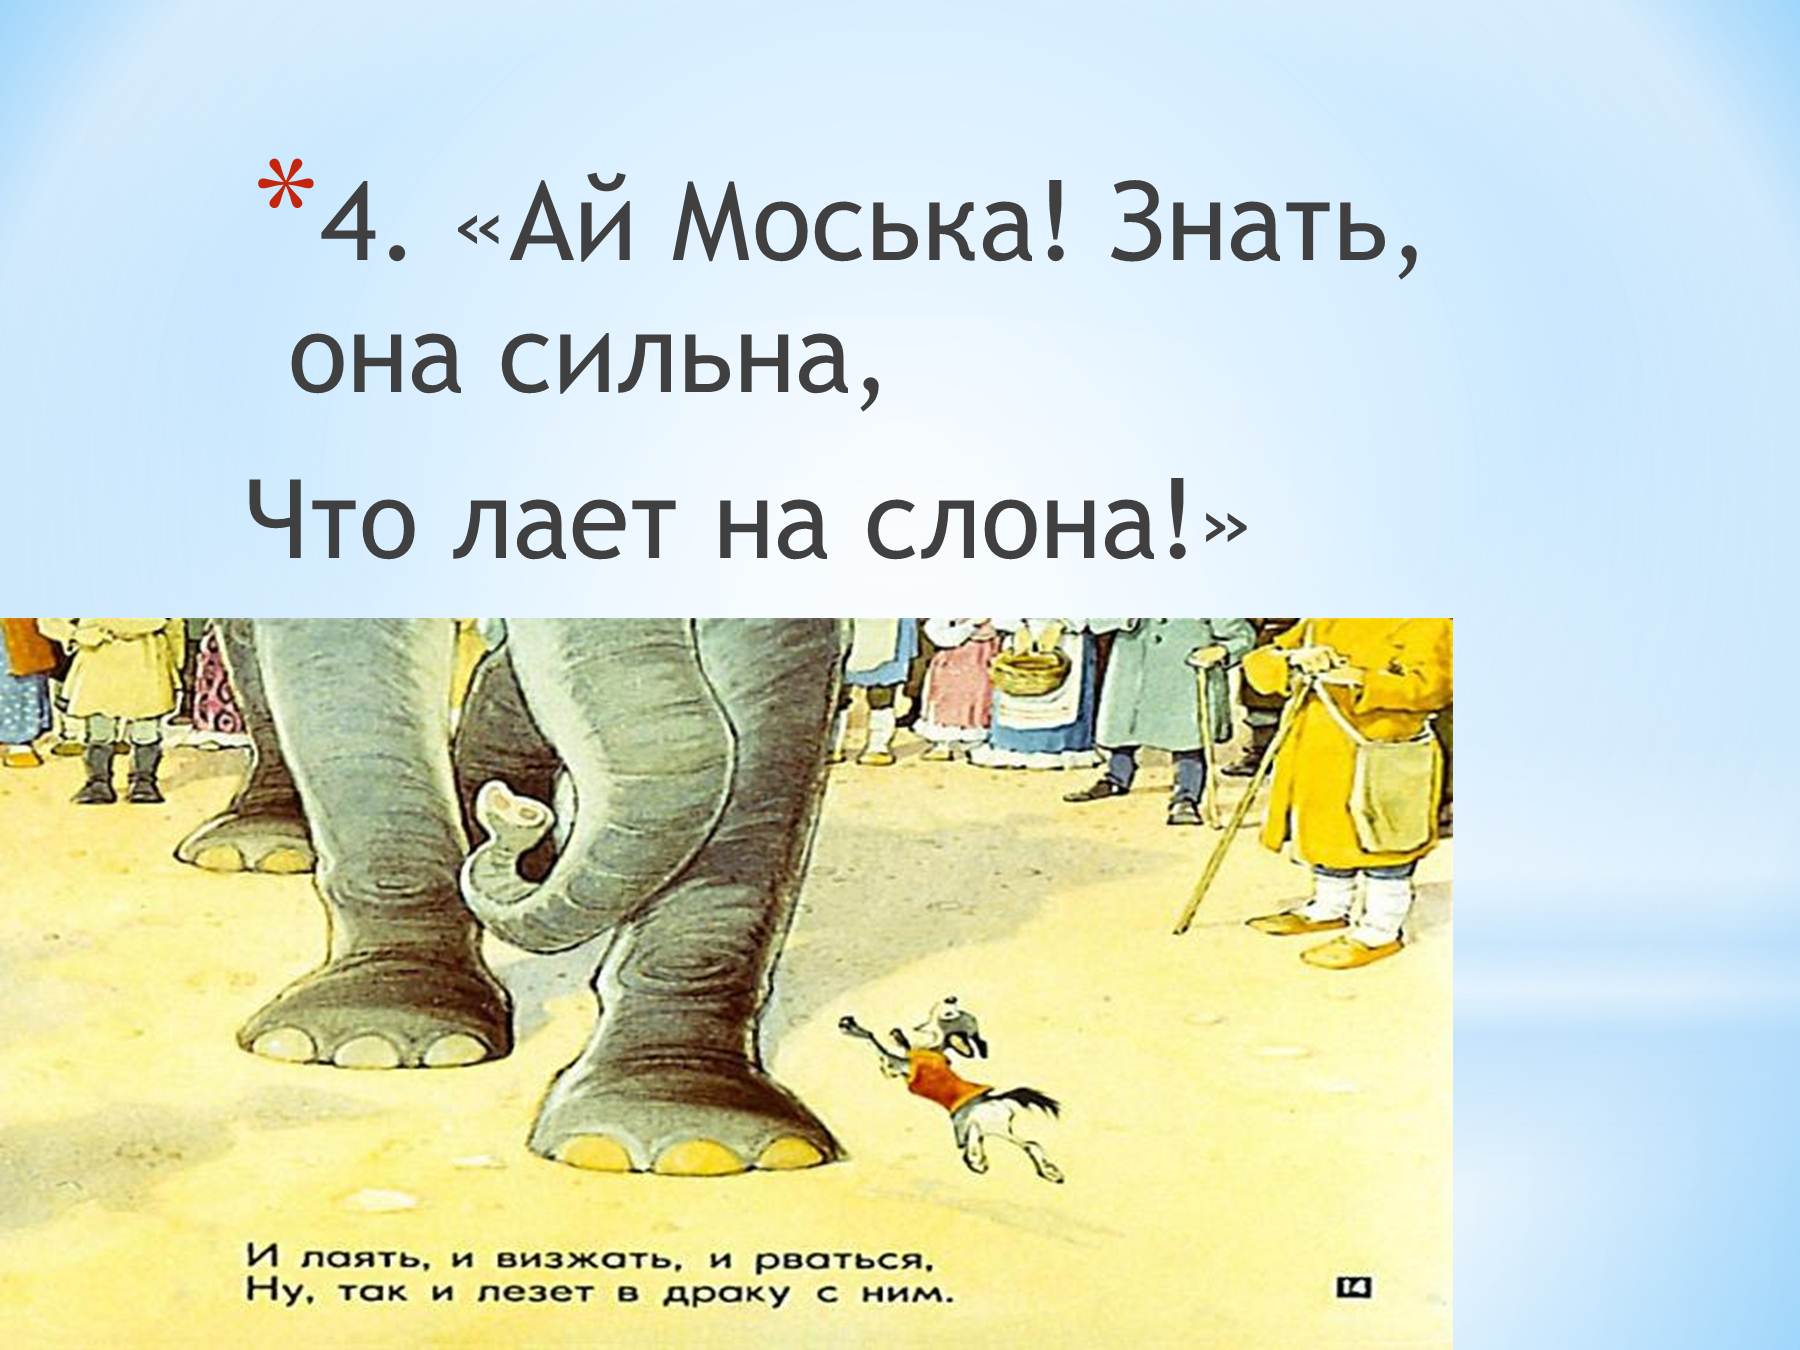 Моська знать она сильна. Моська лает на слона. Знать она сильна коль лает на слона. Рисунок к басне слон и моська. Знать моська сильна.